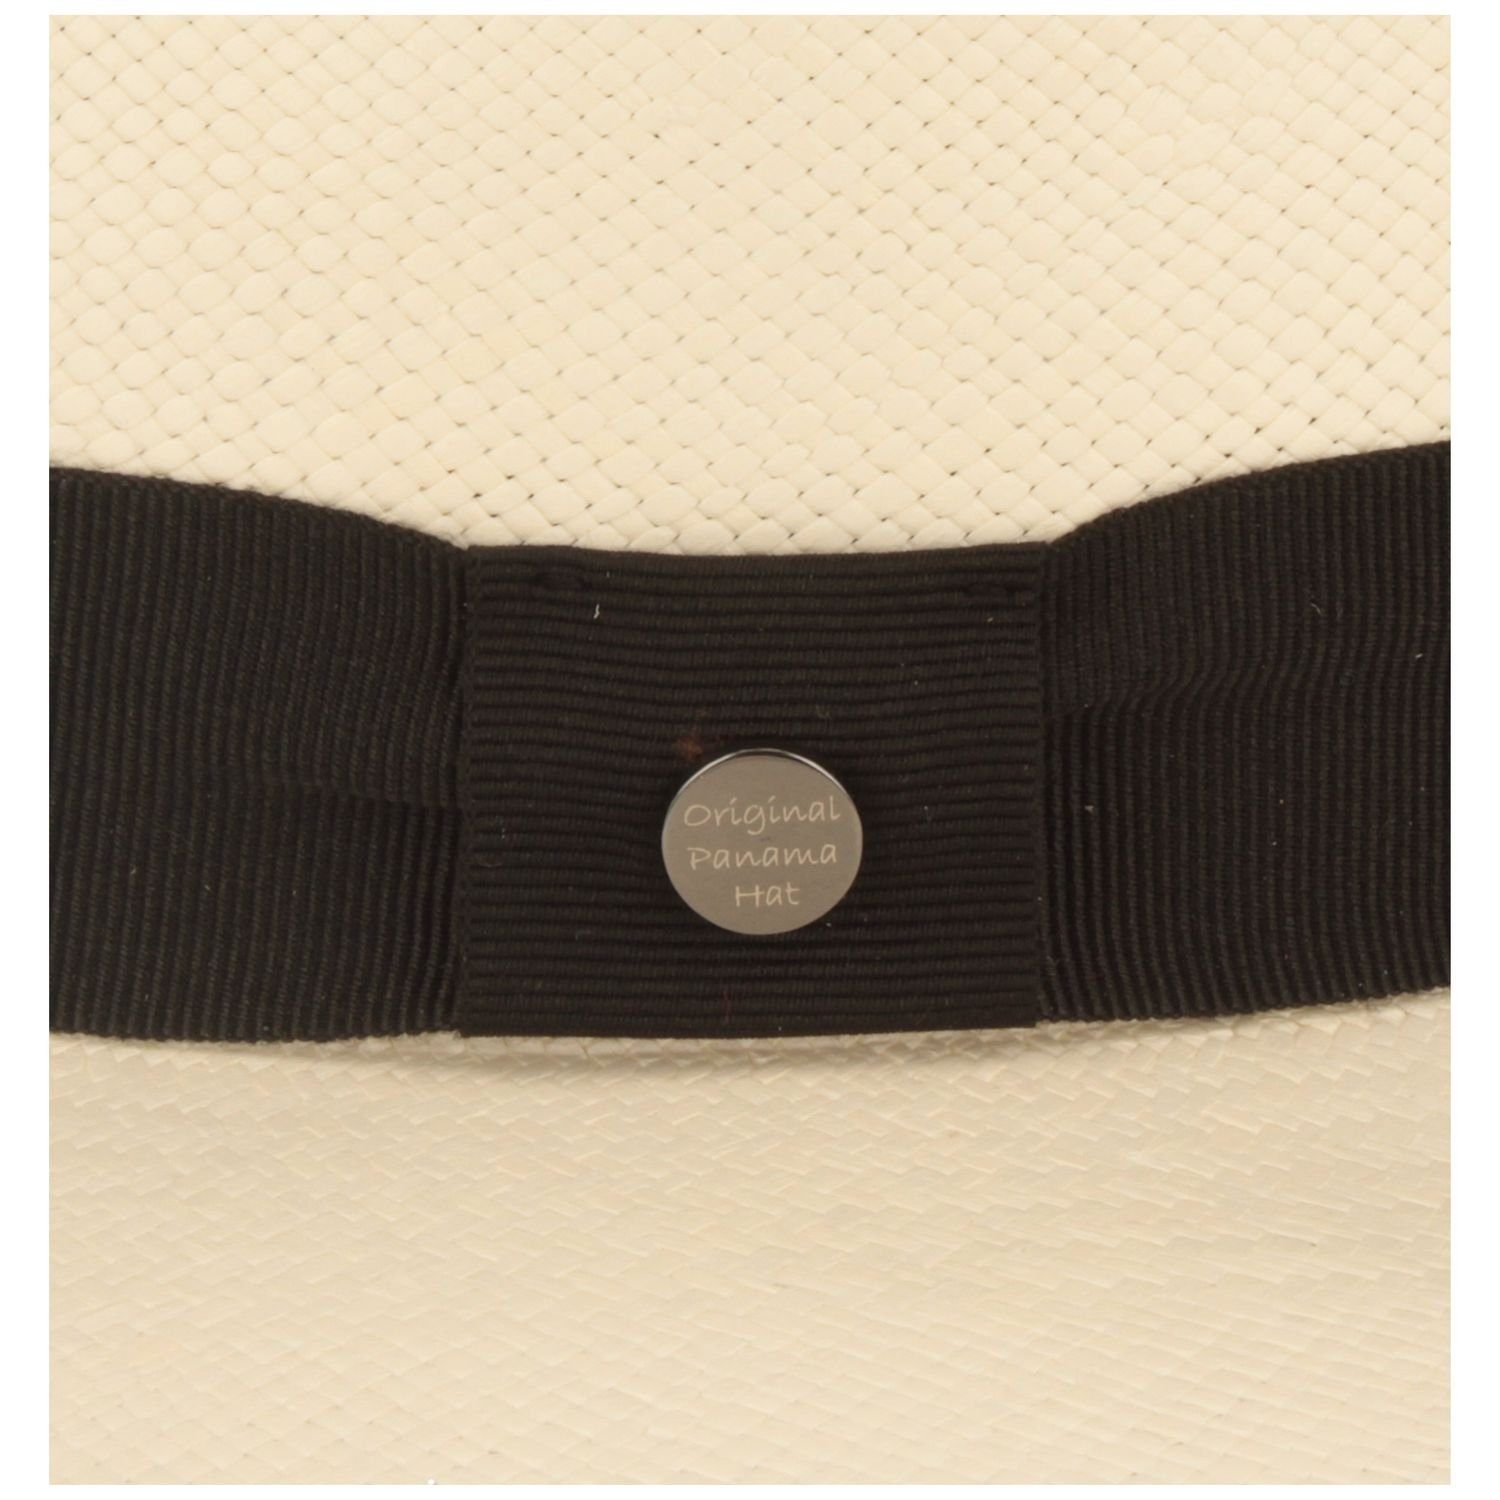 Breiter Strohhut feiner original Panama Ripsband-Garnitur und Hut UV-Schutz weiß 50+ mit